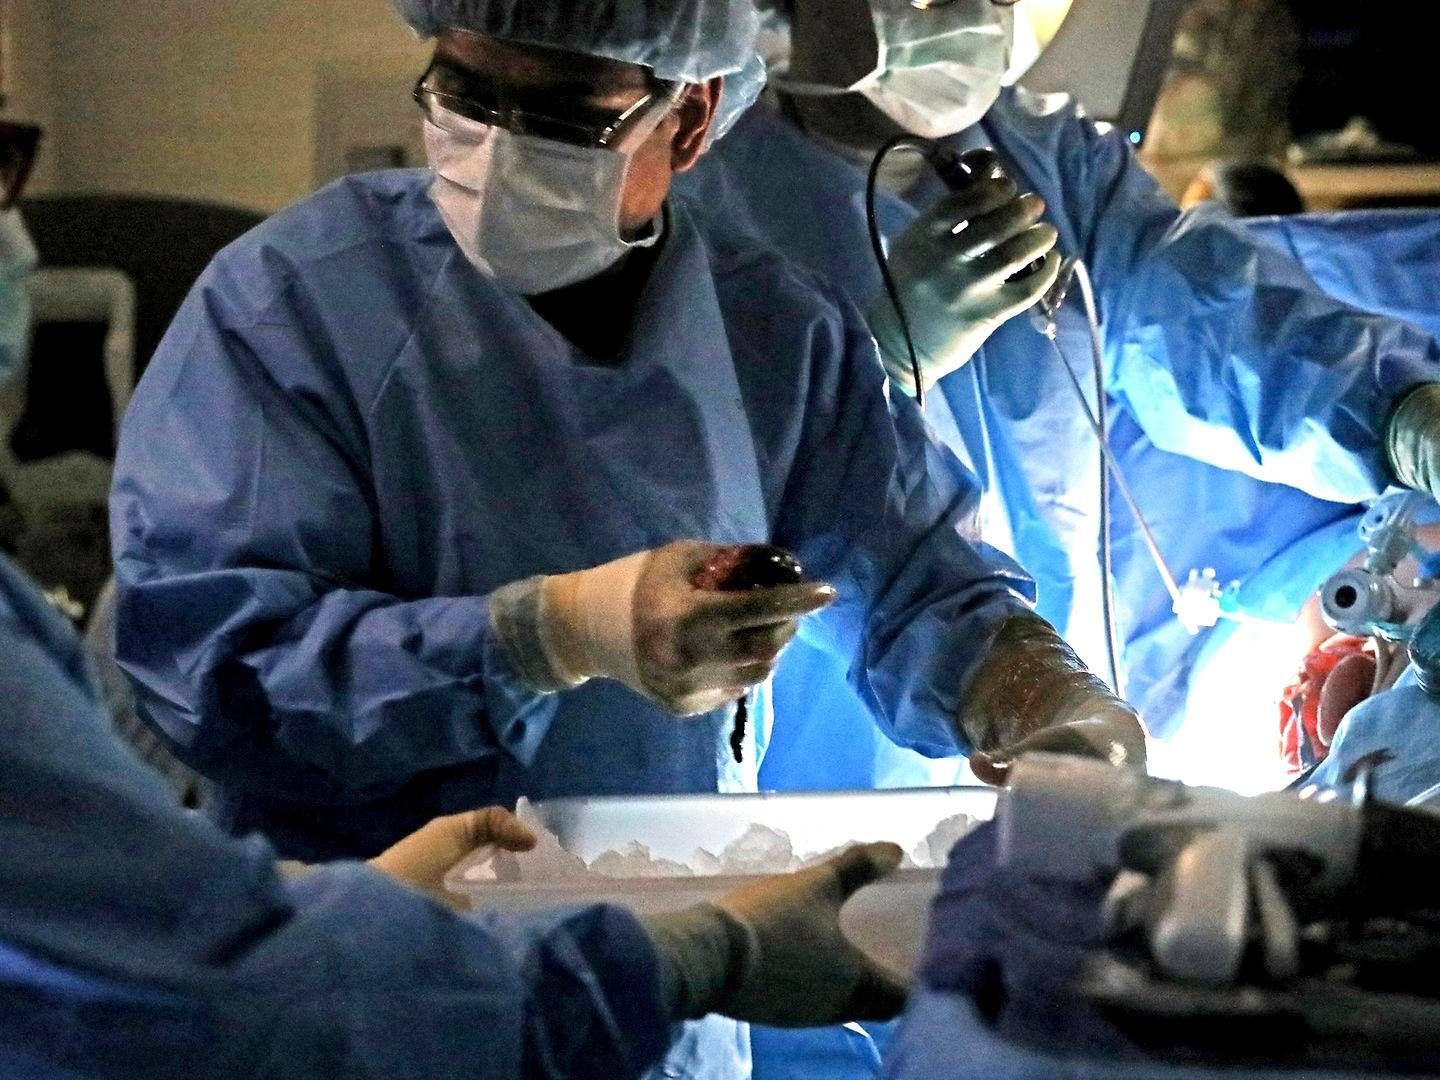 Veloxis' hovedprodukt Envarsus benyttes til at forhindre organafstødning ved nyretransplantationer, som den, der bliver foretaget her af den amerikanske kirurg Chintalapati Varma. | Foto: Laurie Skrivan / AP / Ritzau Scanpix